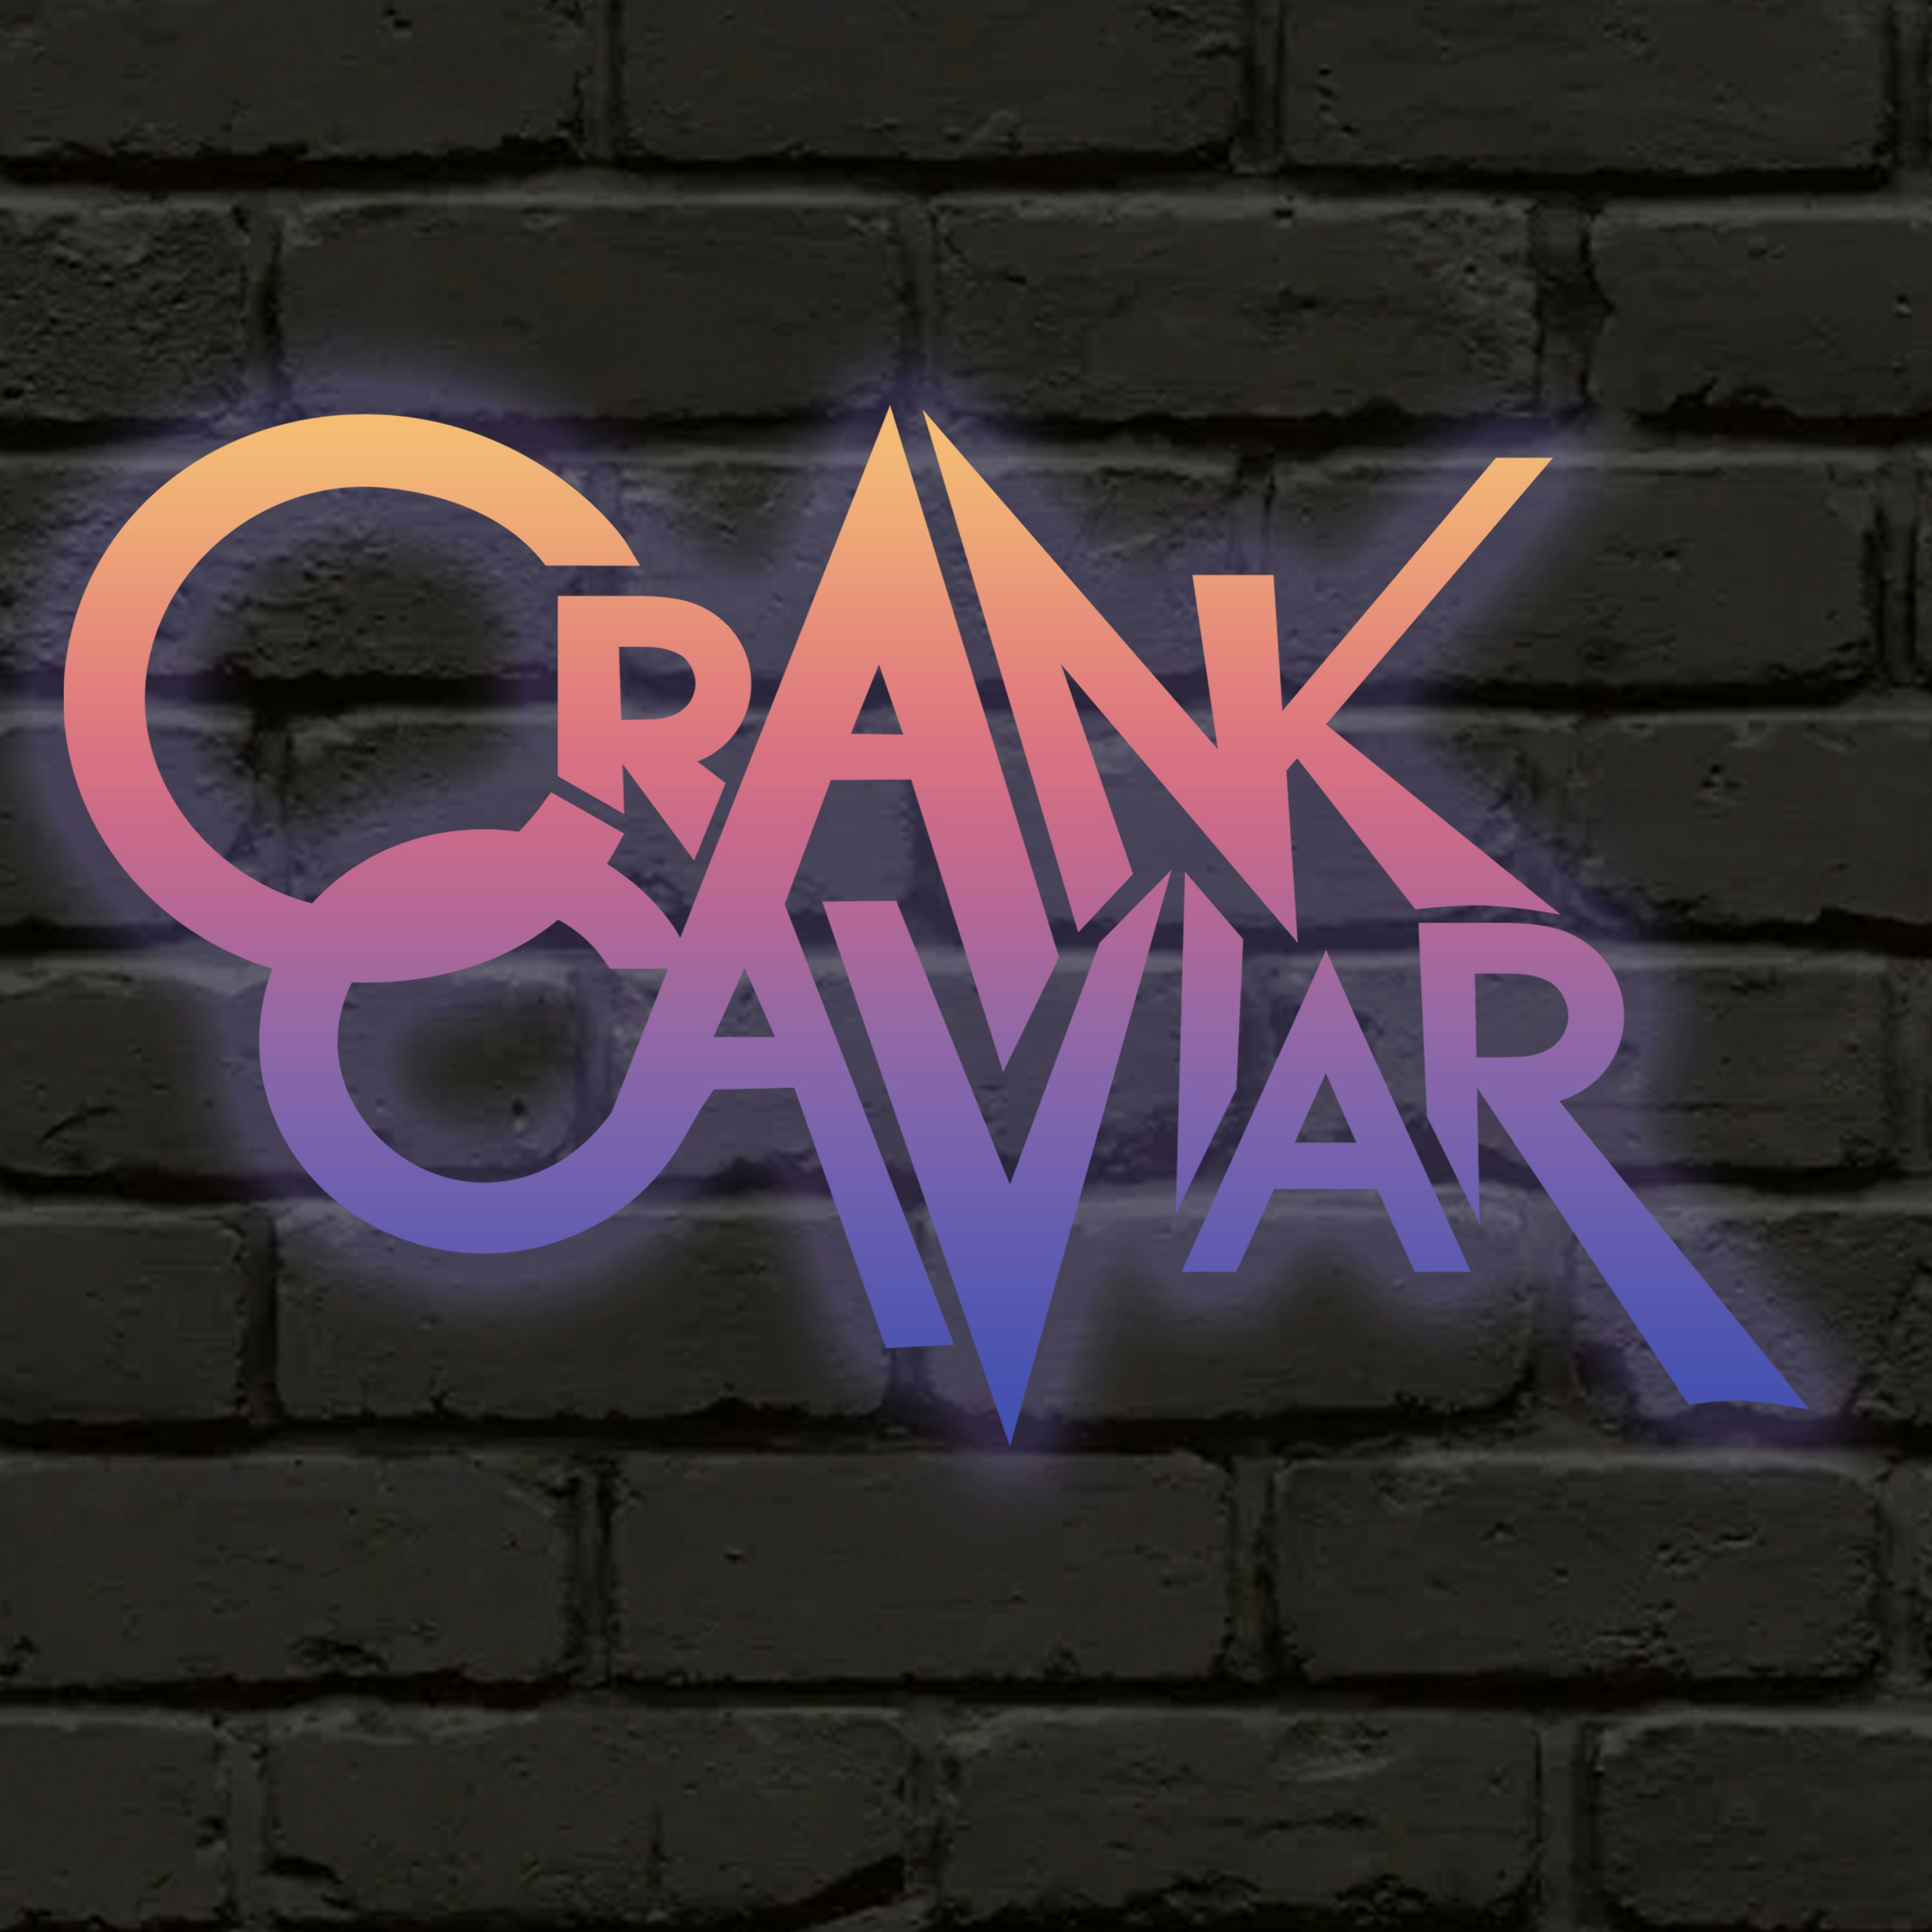 Crank Caviar